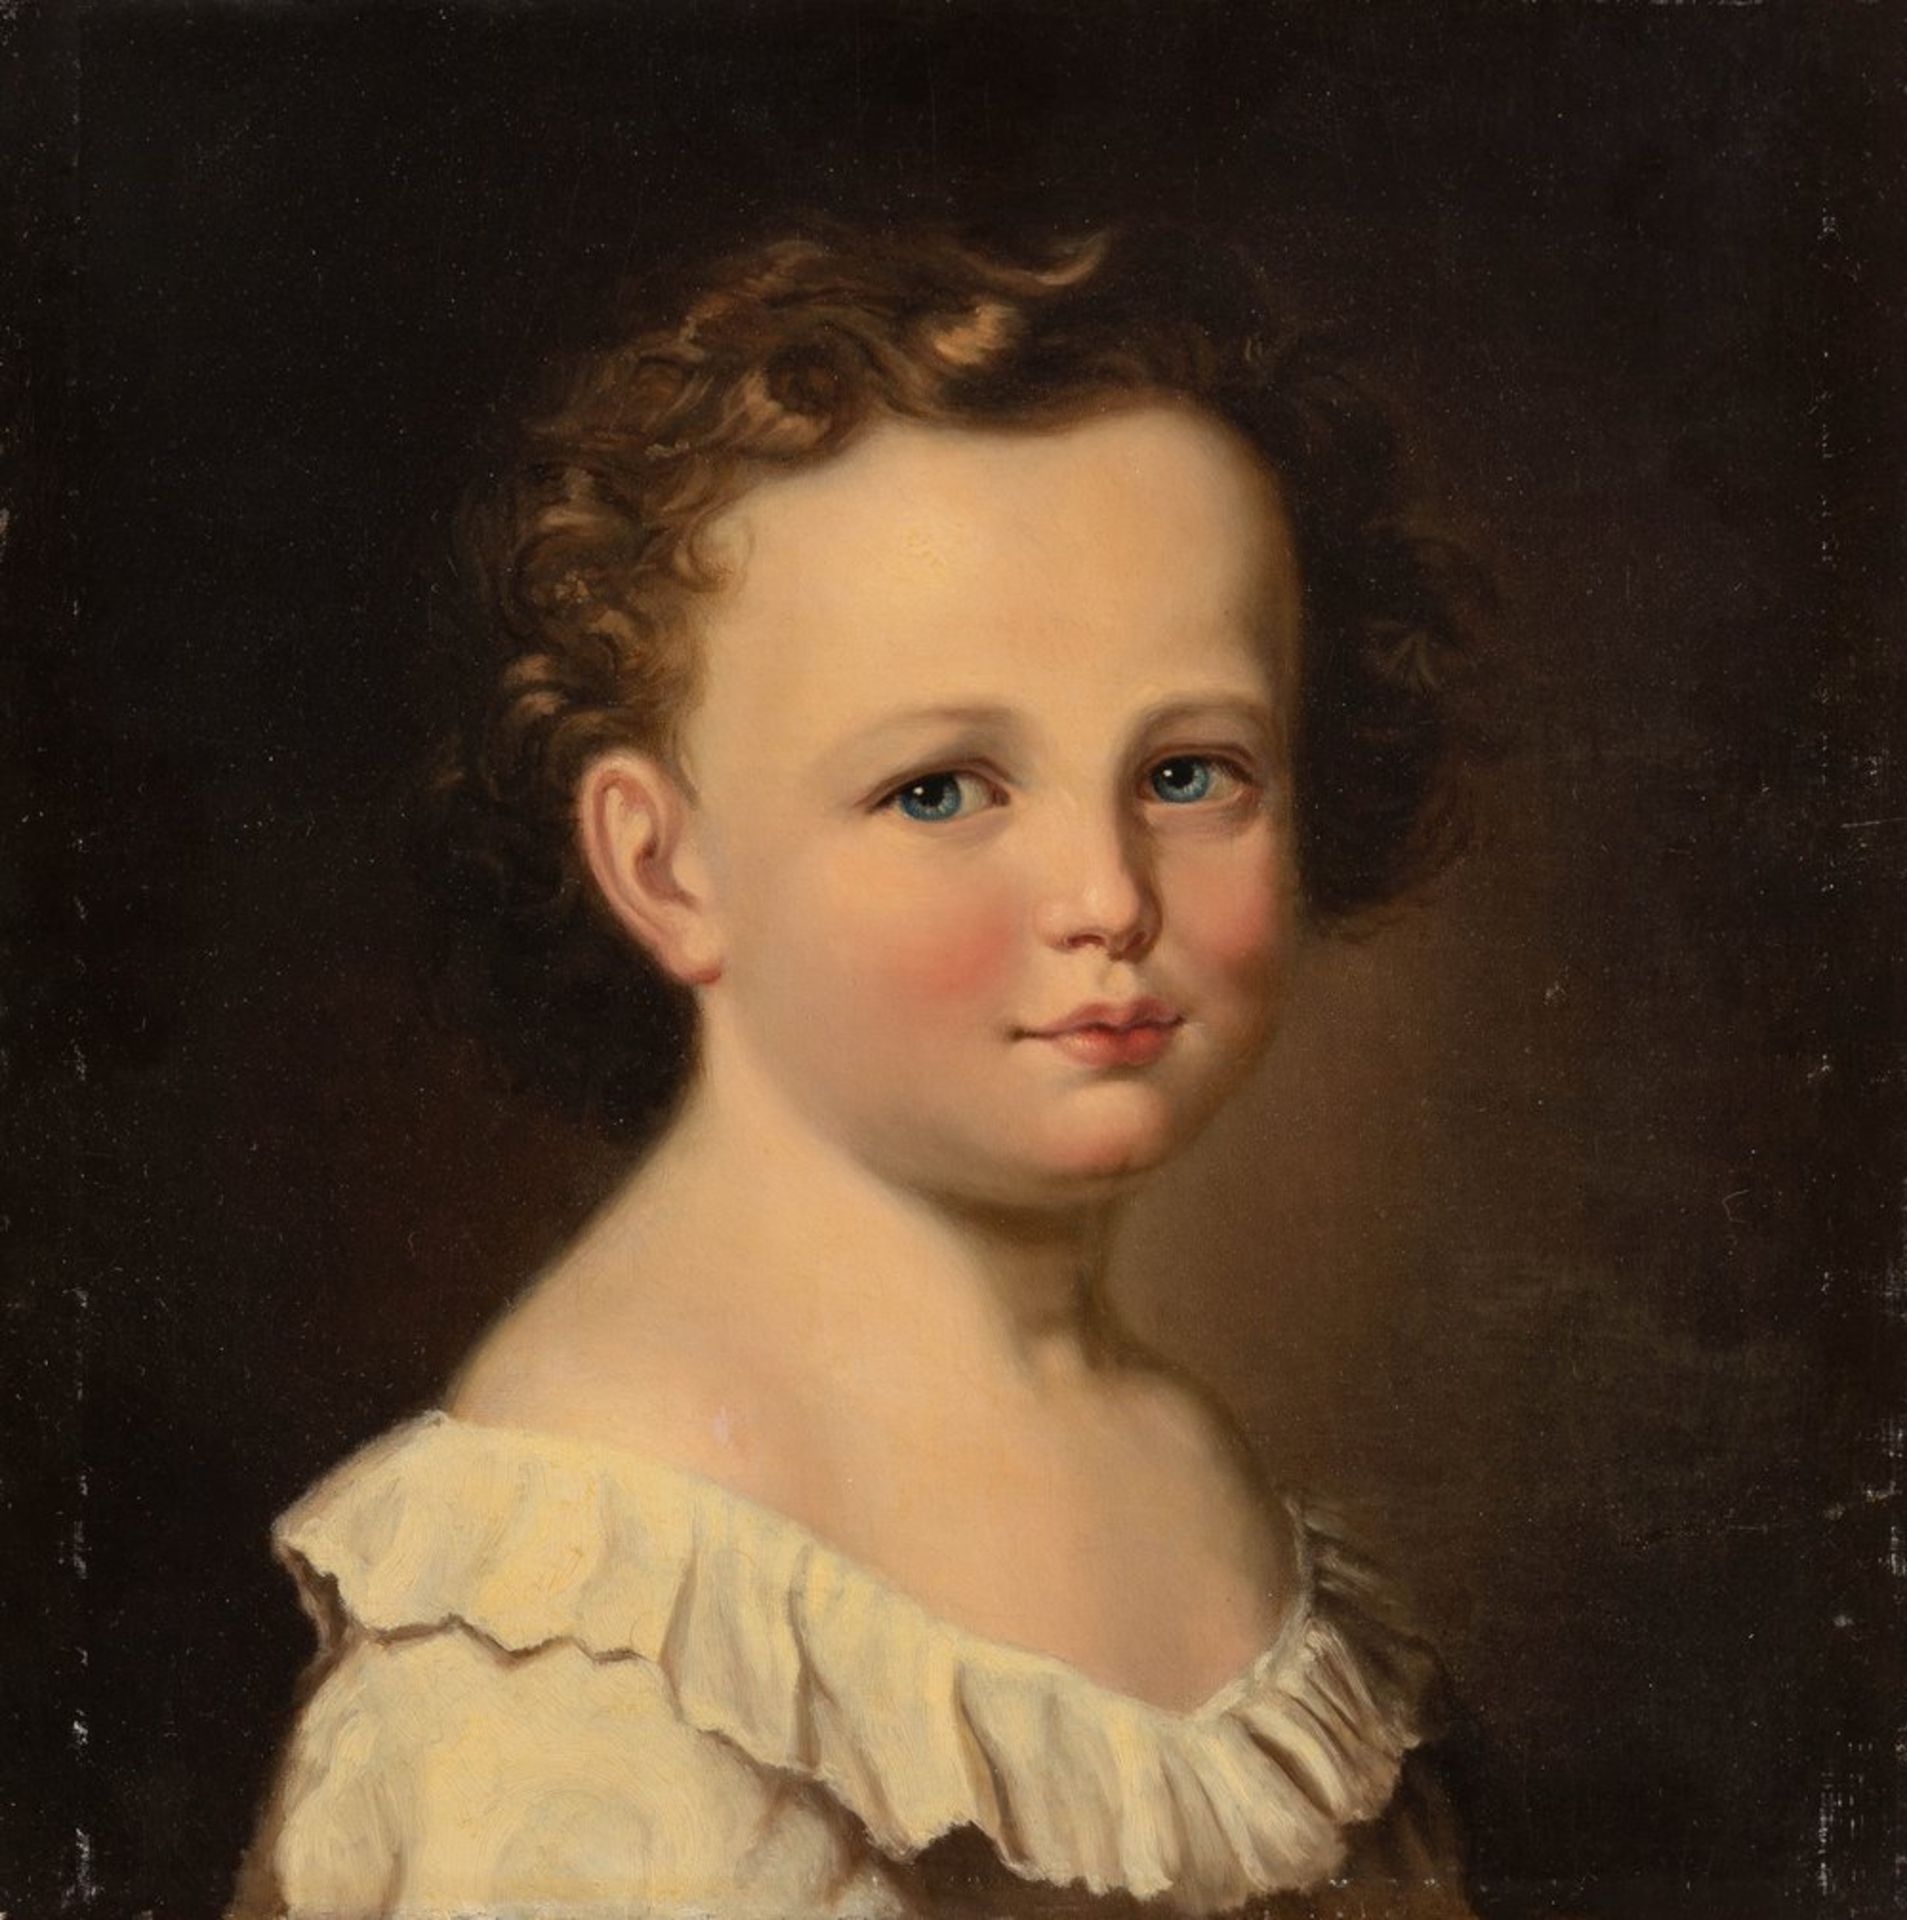 Porträtmaler, um 1830/35